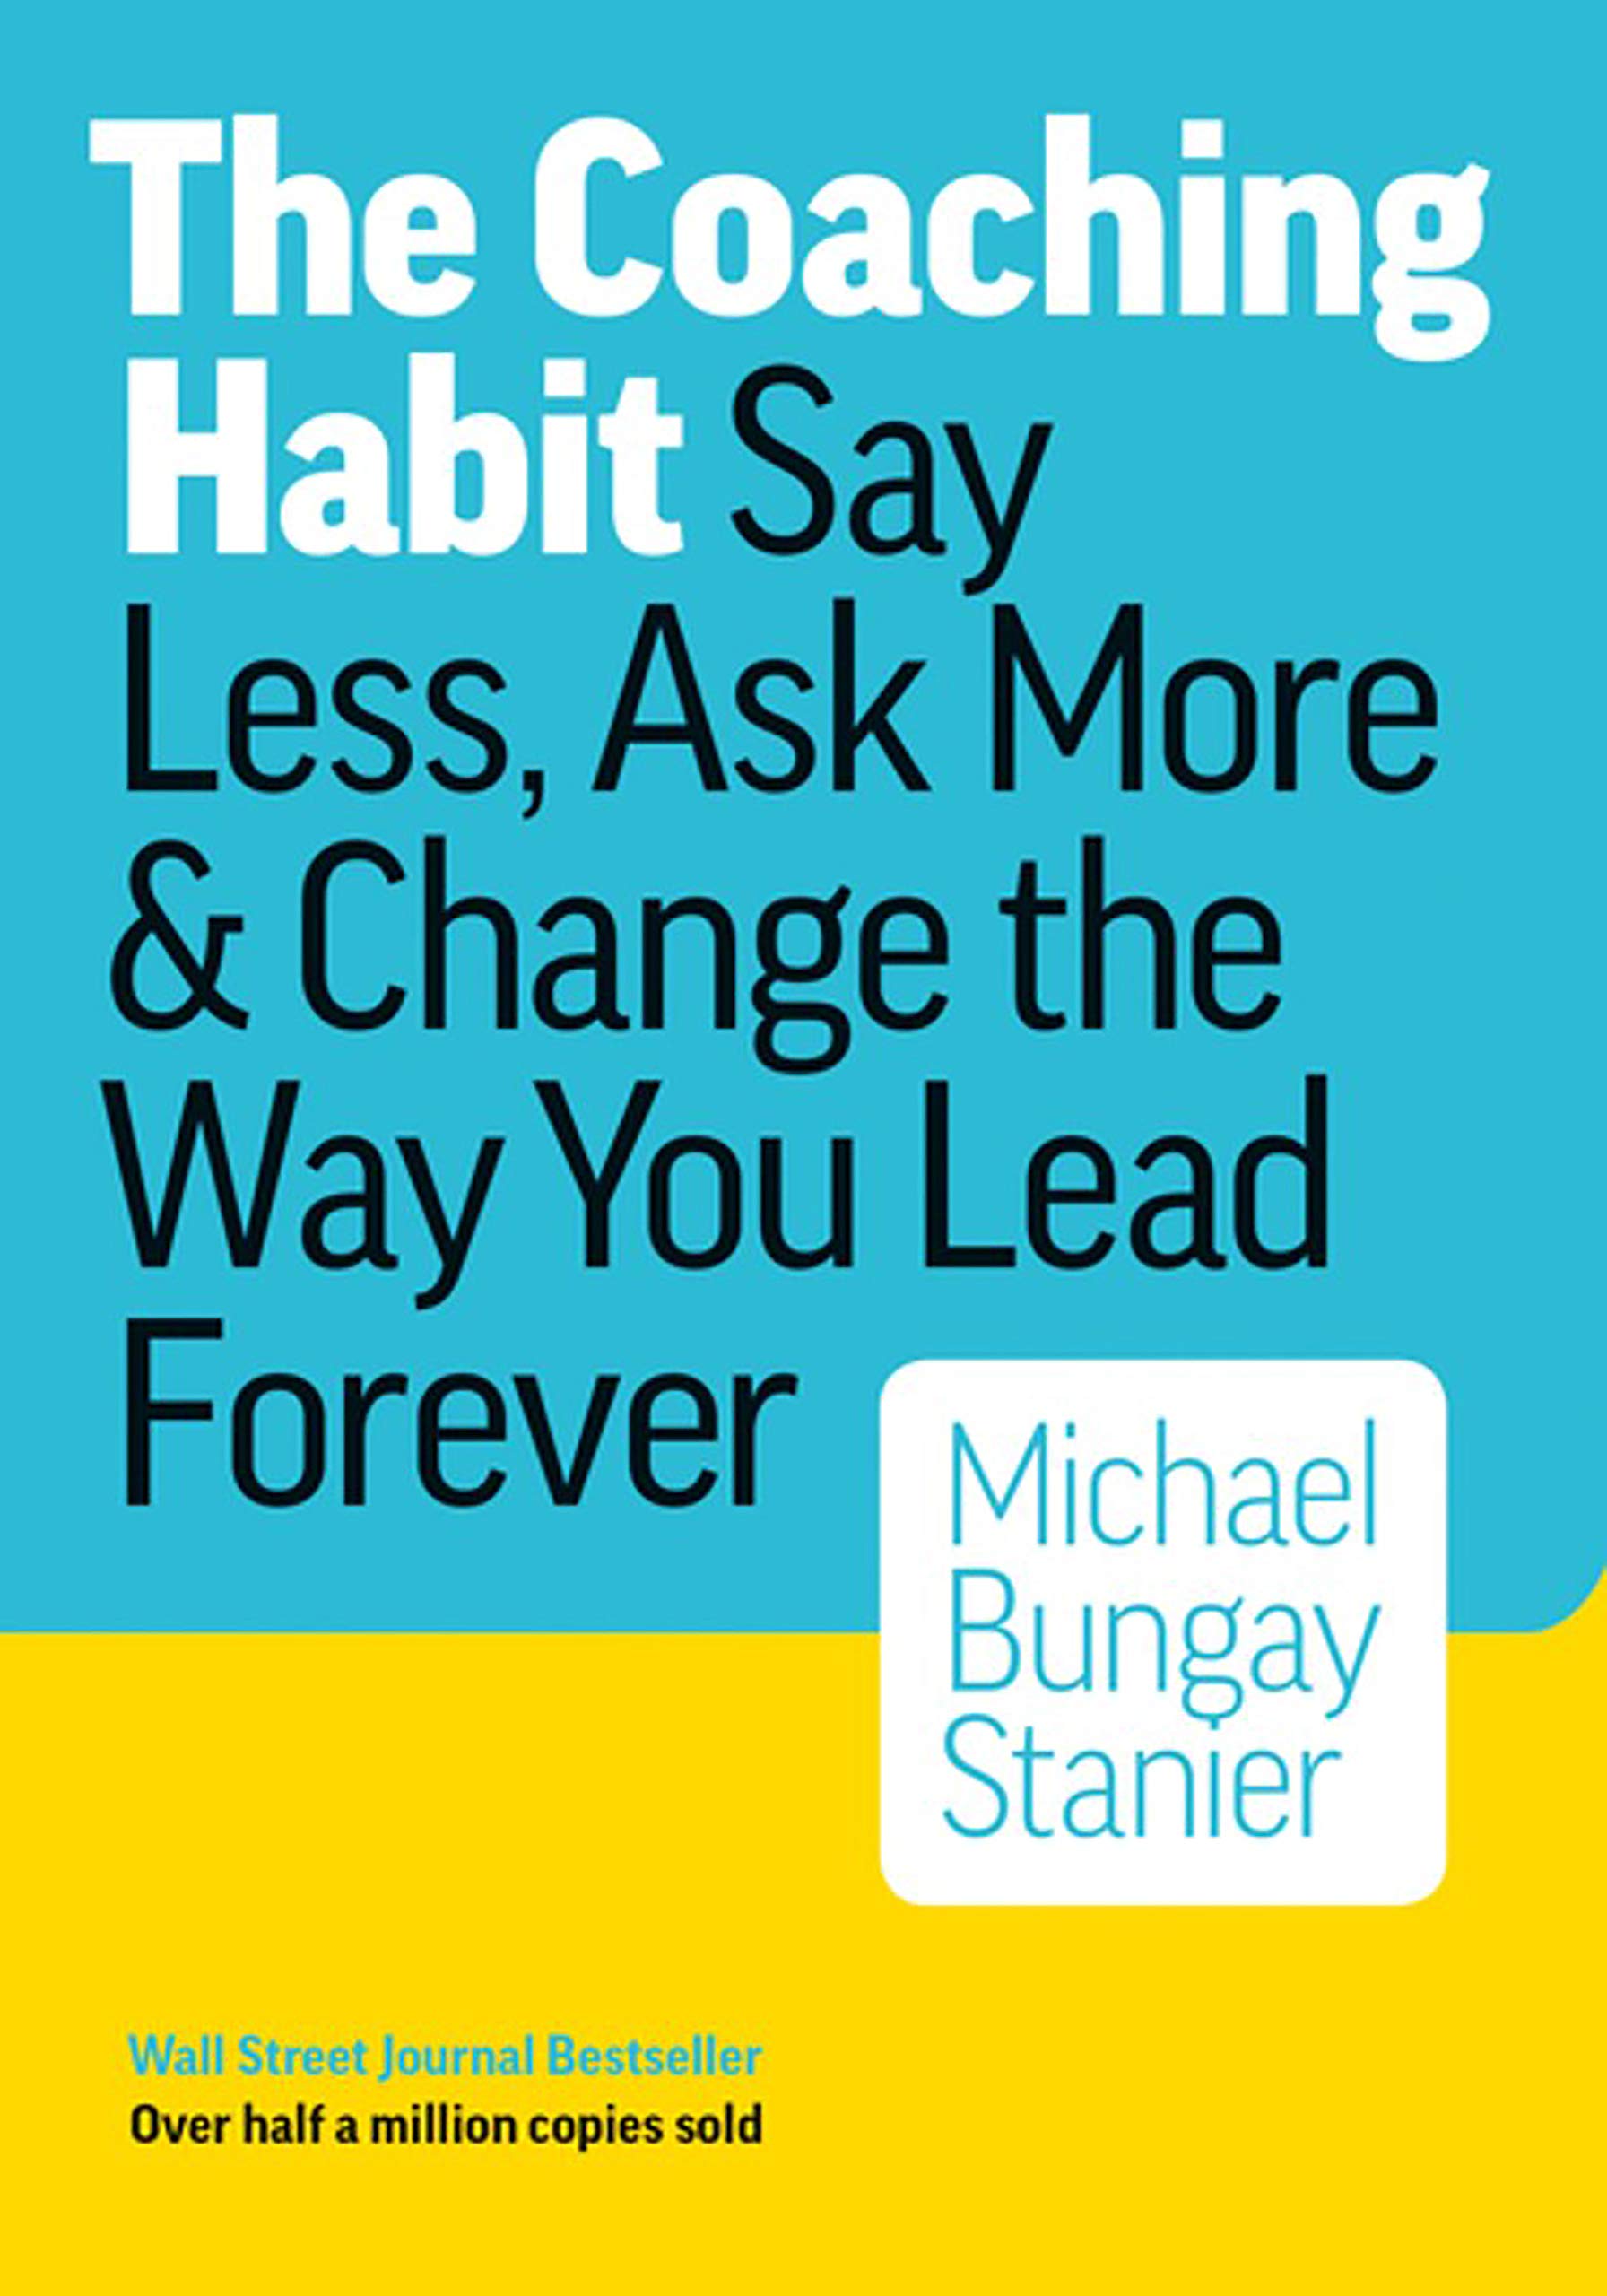 Couverture - The Coaching Habit - Michael Bungay Stanier